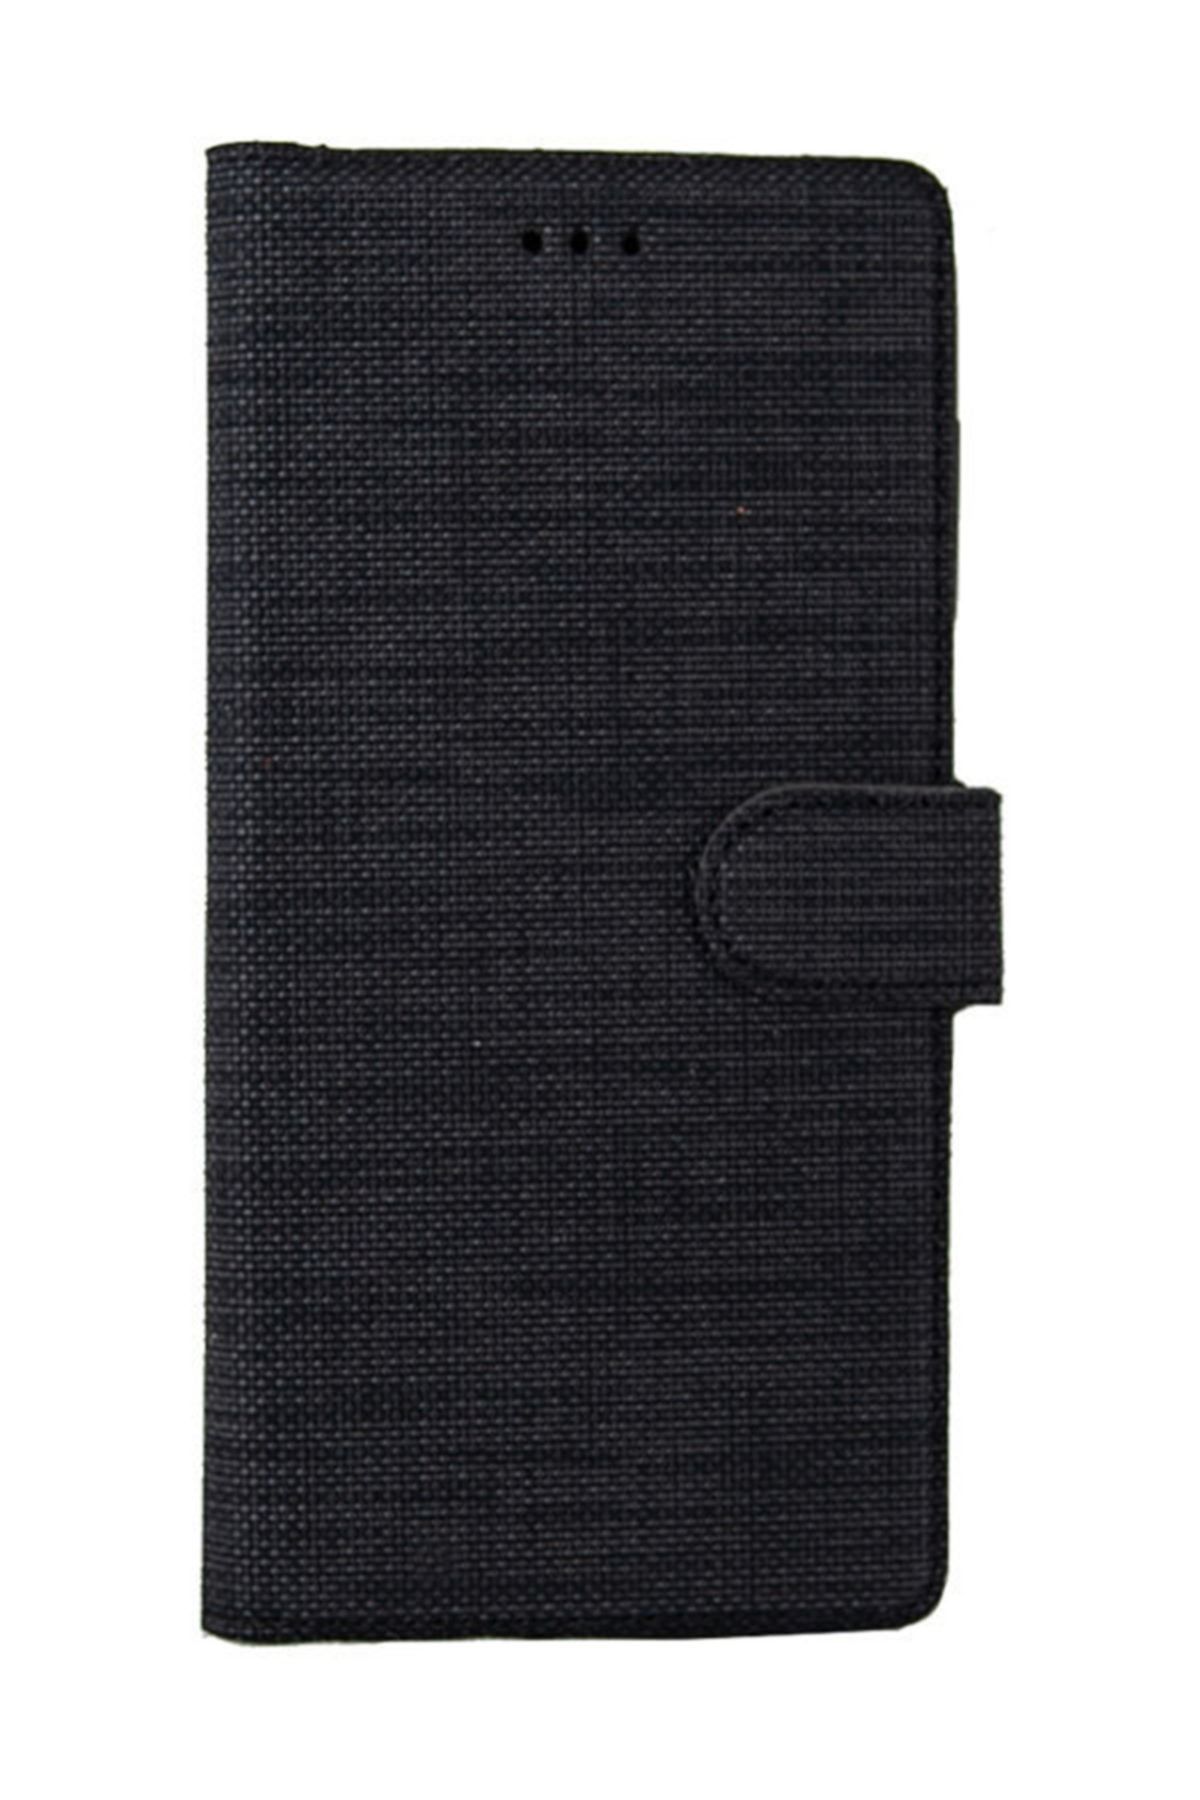 Coverzone Samsung Galaxy Note 5 Standlı Kartvizitli Ve Para Gözlü Kumaş Desen Mhm Siyah